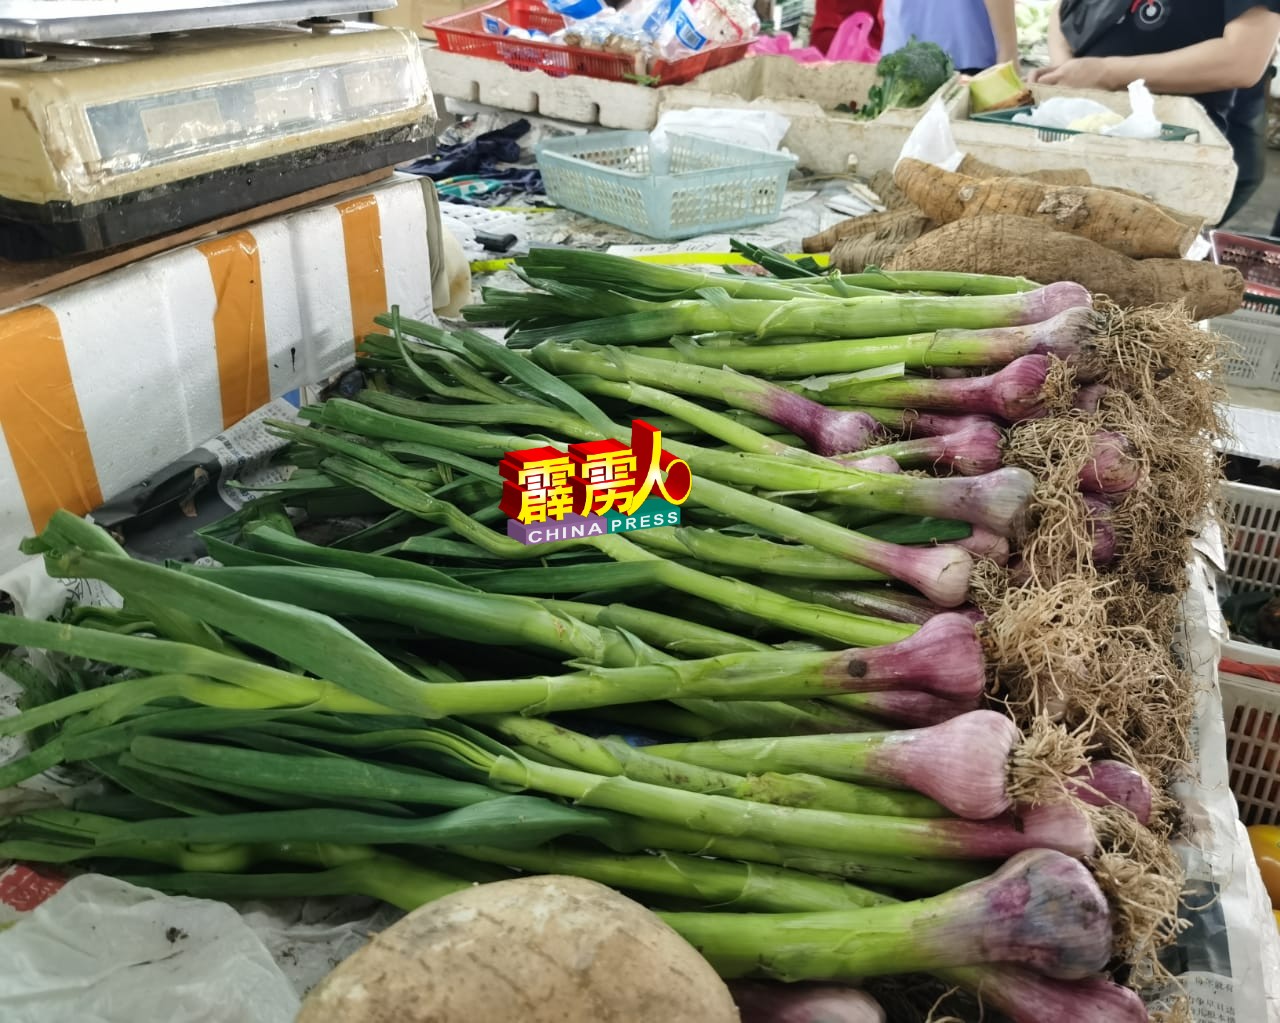 肥美的中国蒜价格稍降价了，是传统年菜之一。